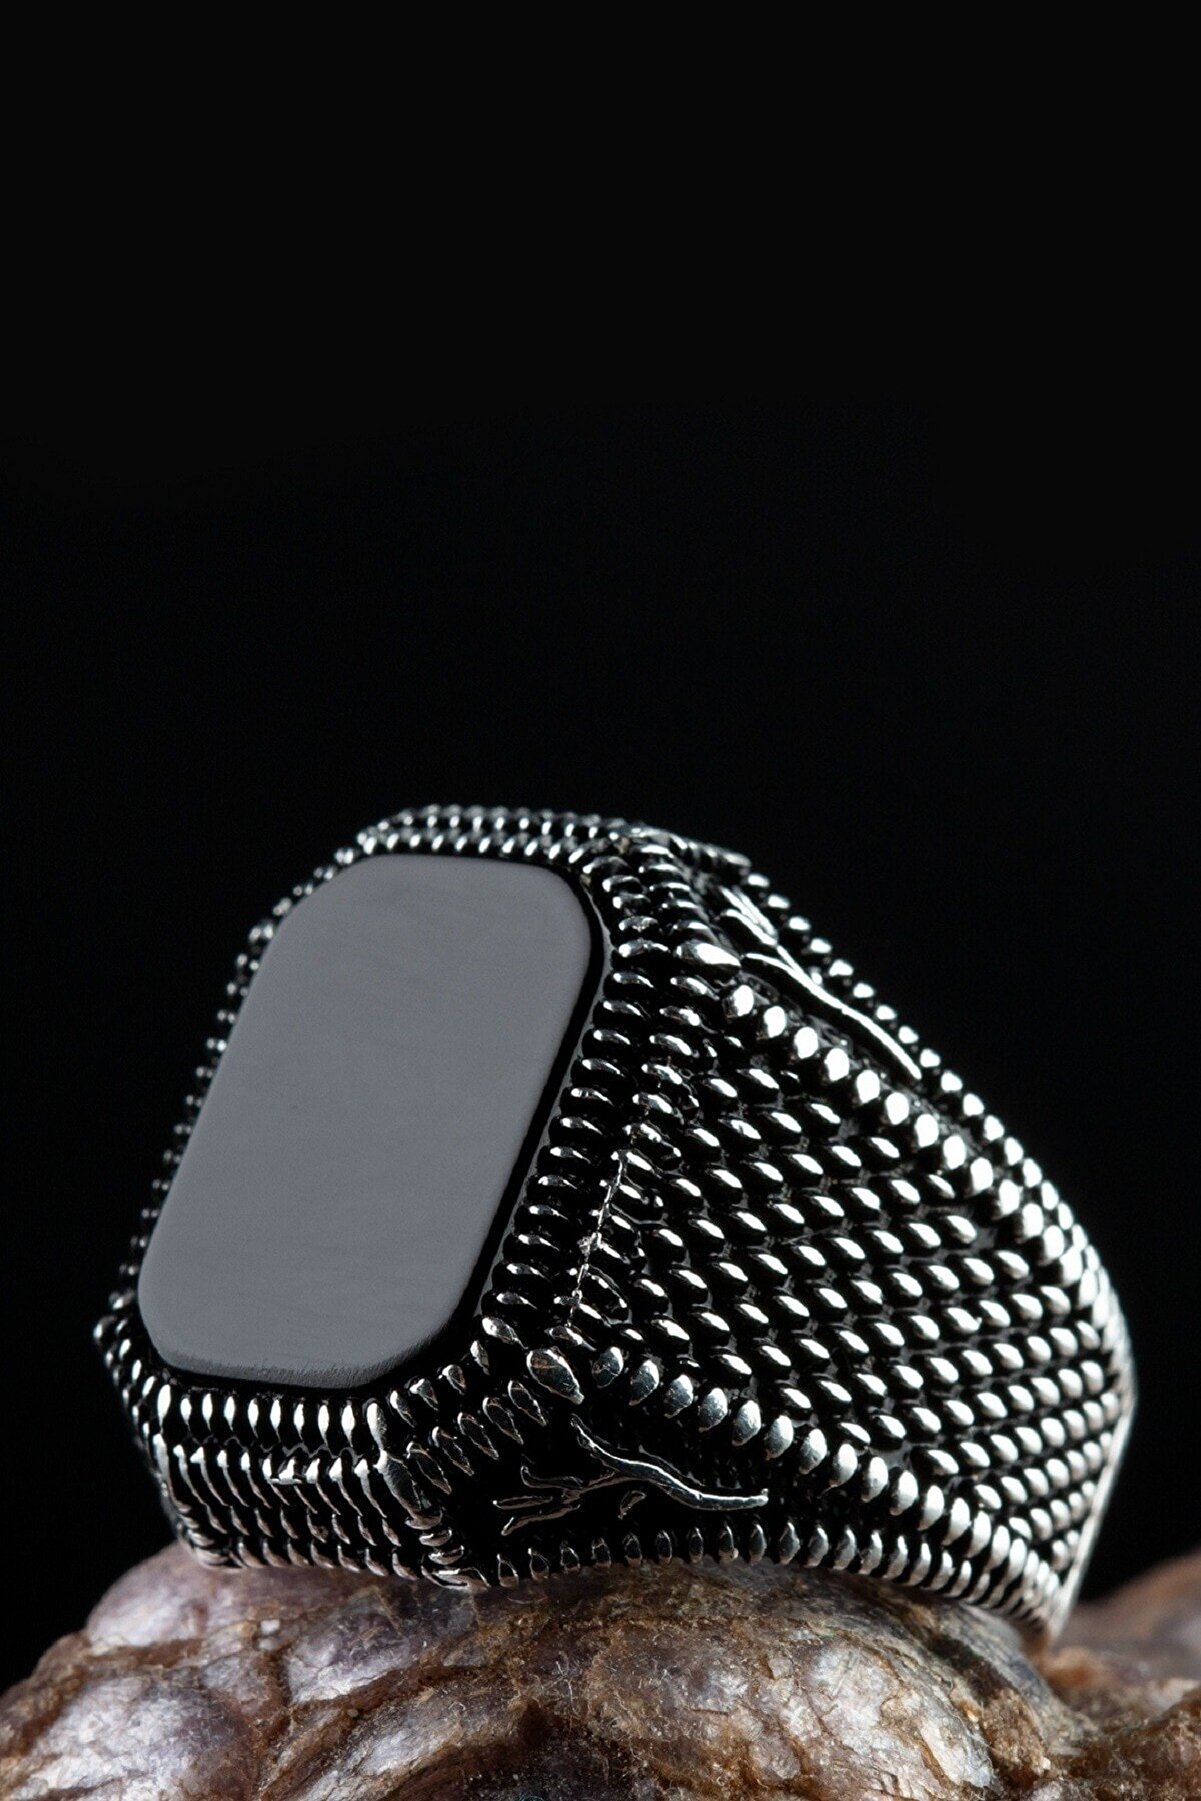 Anı Yüzük Erkek Siyah Oniks Taşlı Kare Model Sade Tasarım 925 Ayar Gümüş Yüzük Şık Motifli Desenli